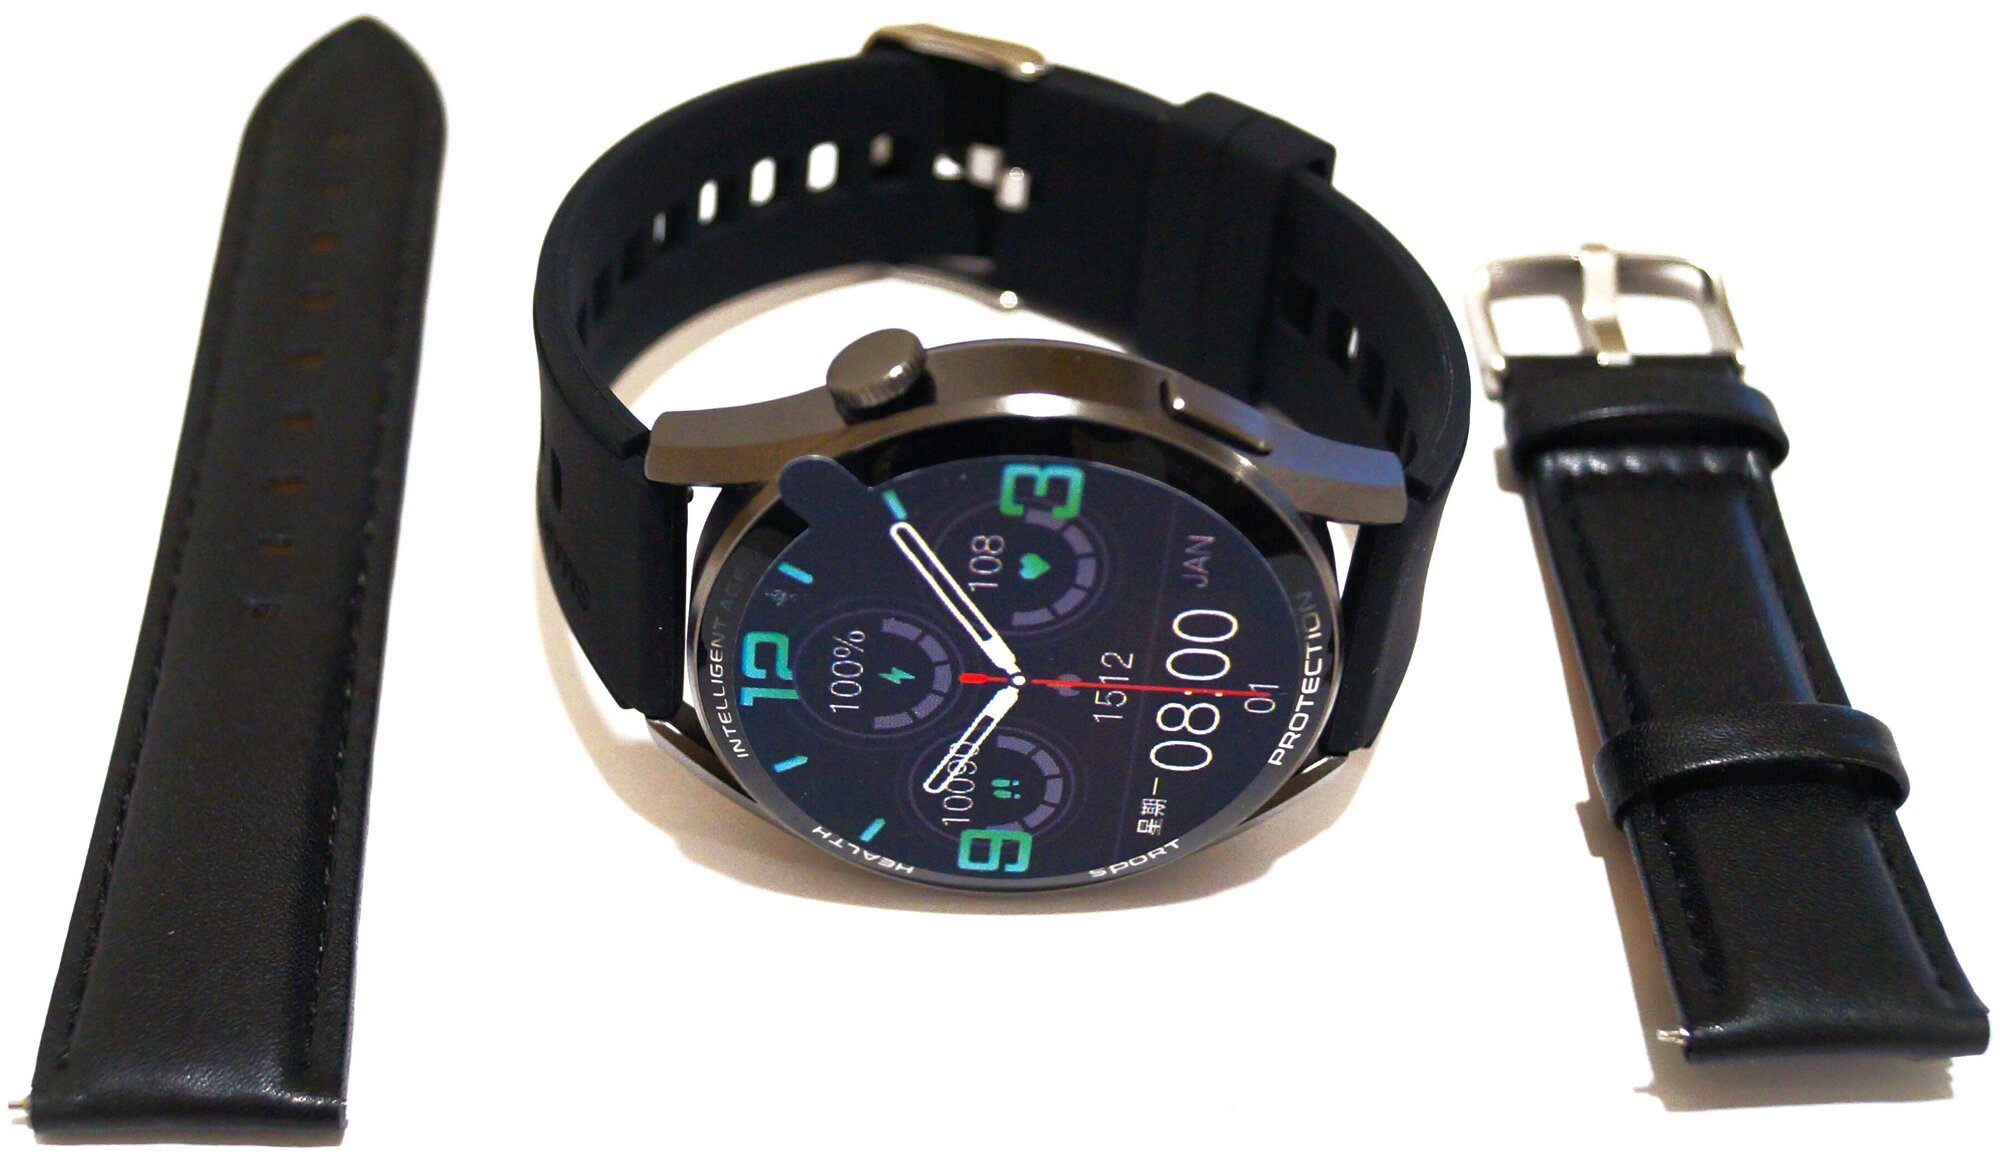 Умные часы Smart Watch X3 PRO часы мужские и женские / подростковые / для школьника/ Смарт часы фитнес браслет спортивный/ черный